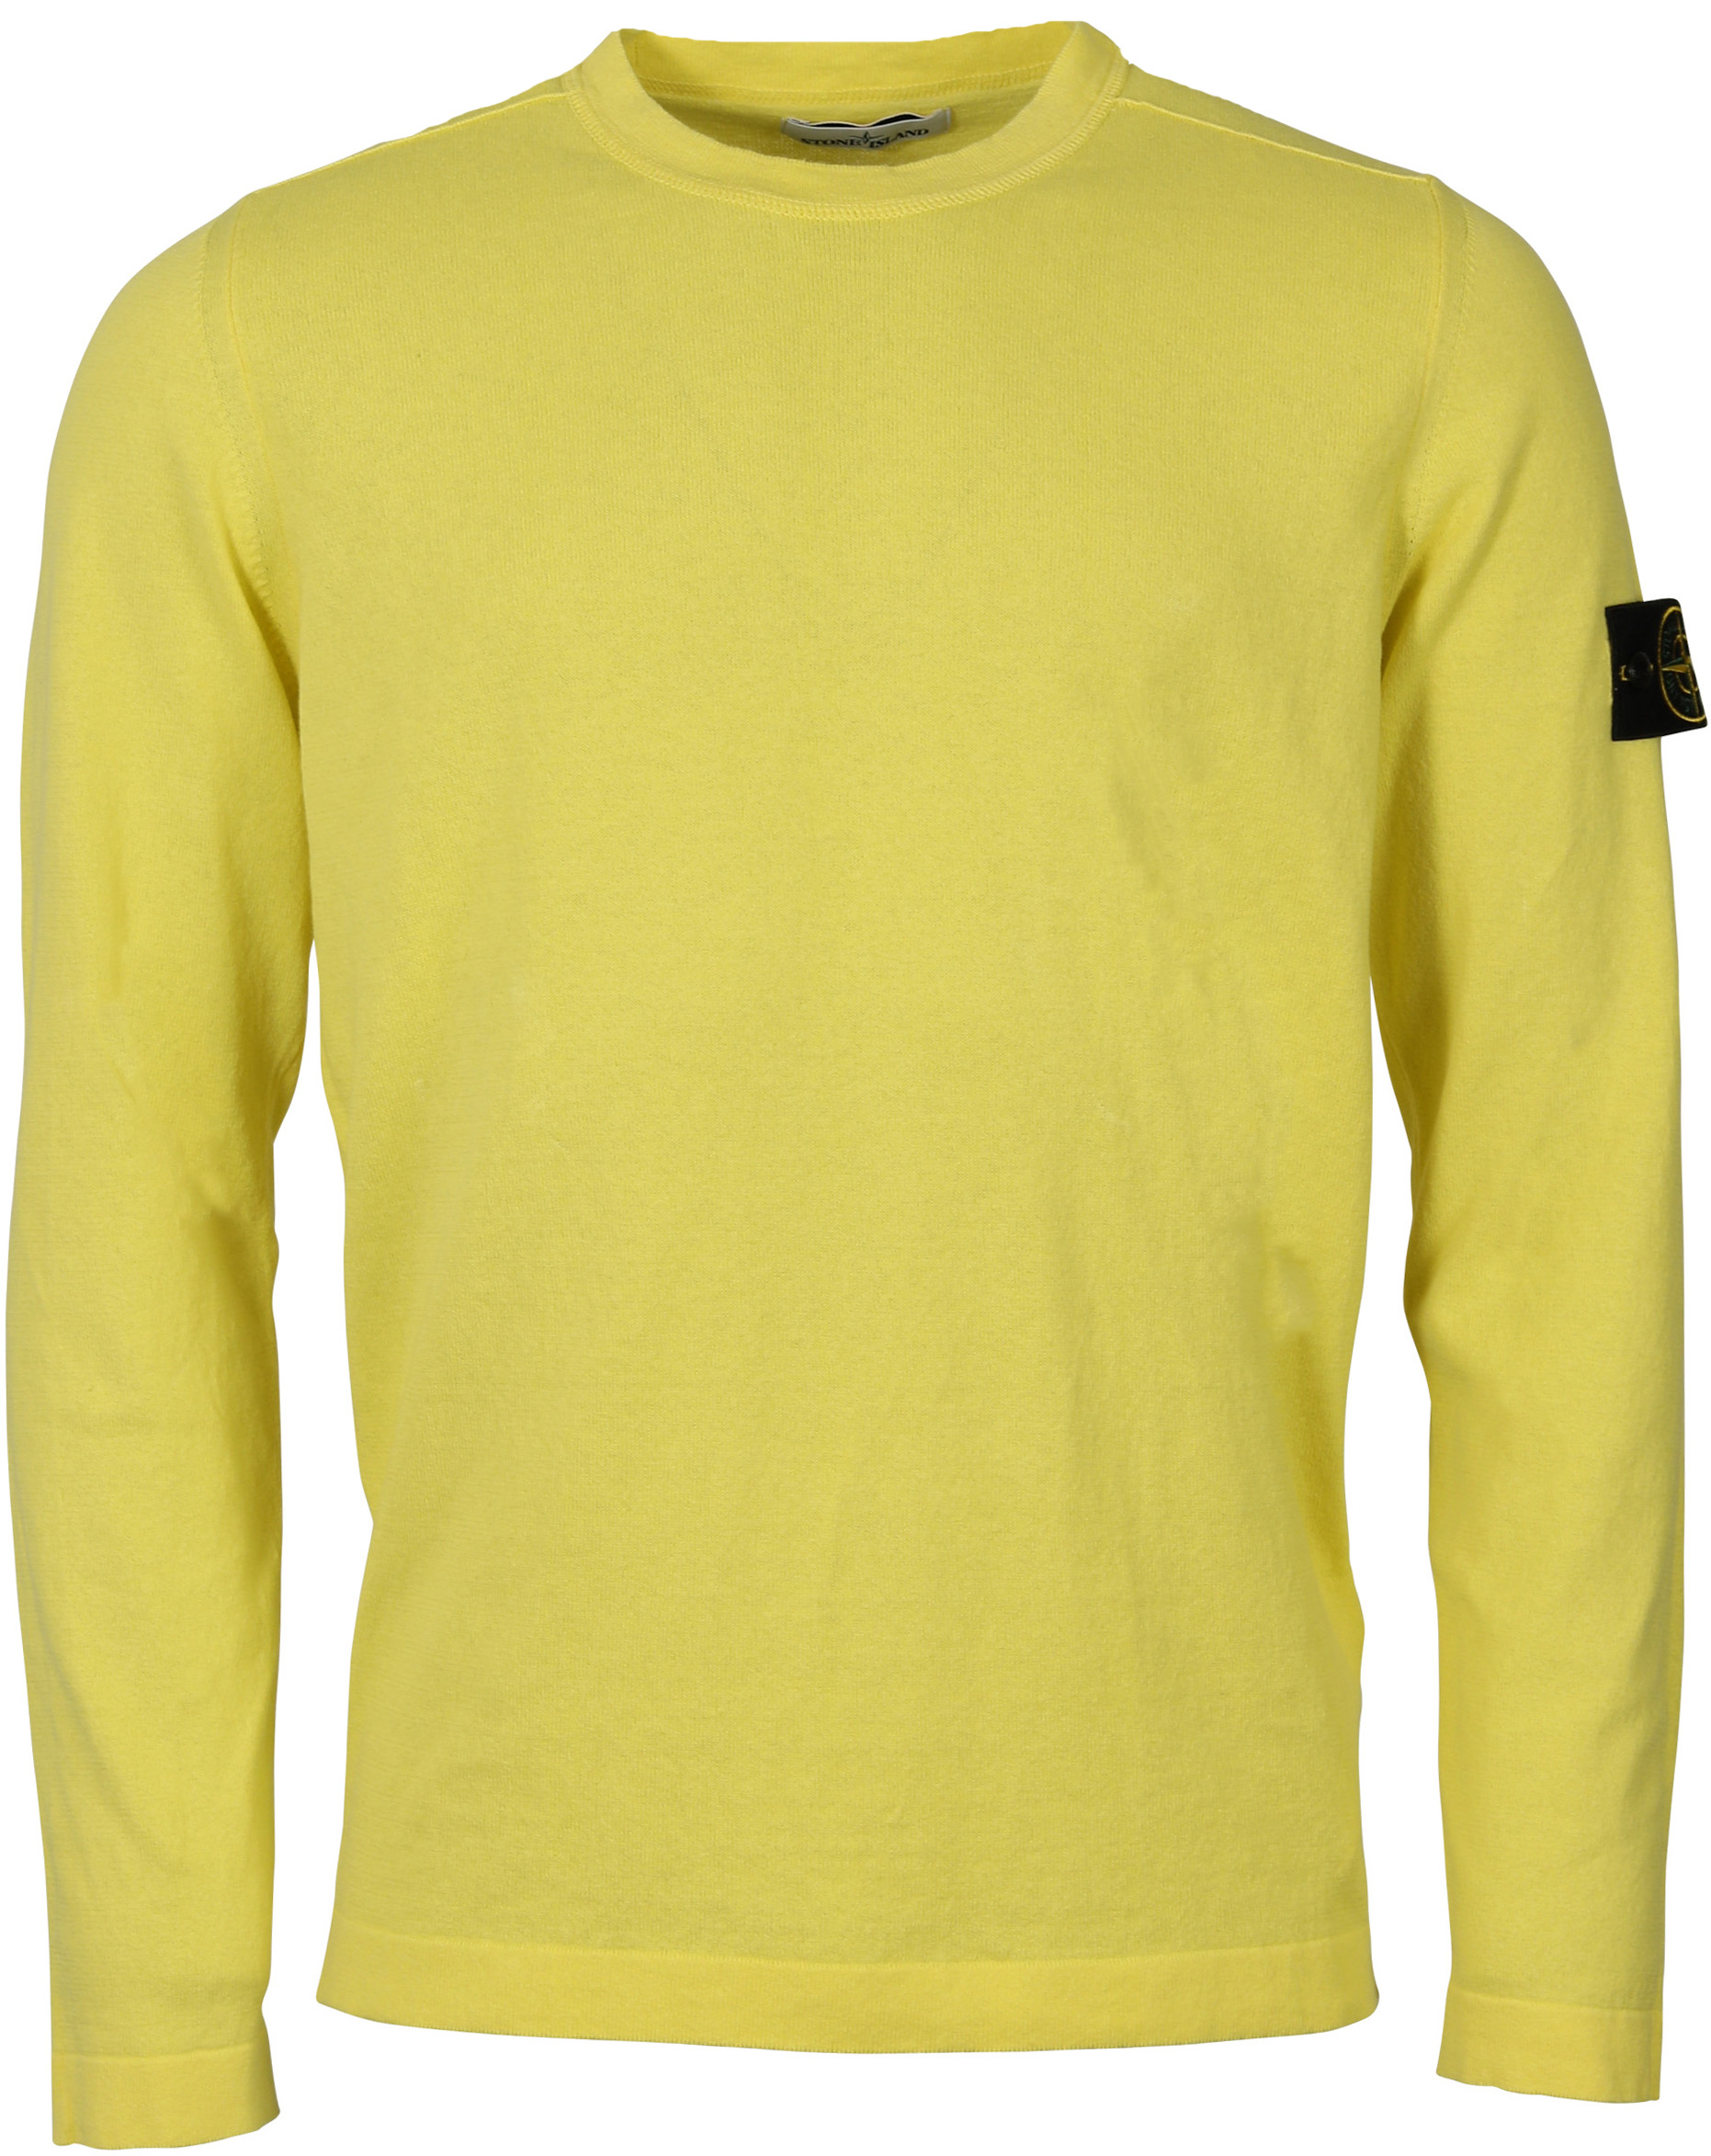 Stone Island Knit Sweater Yellow XL